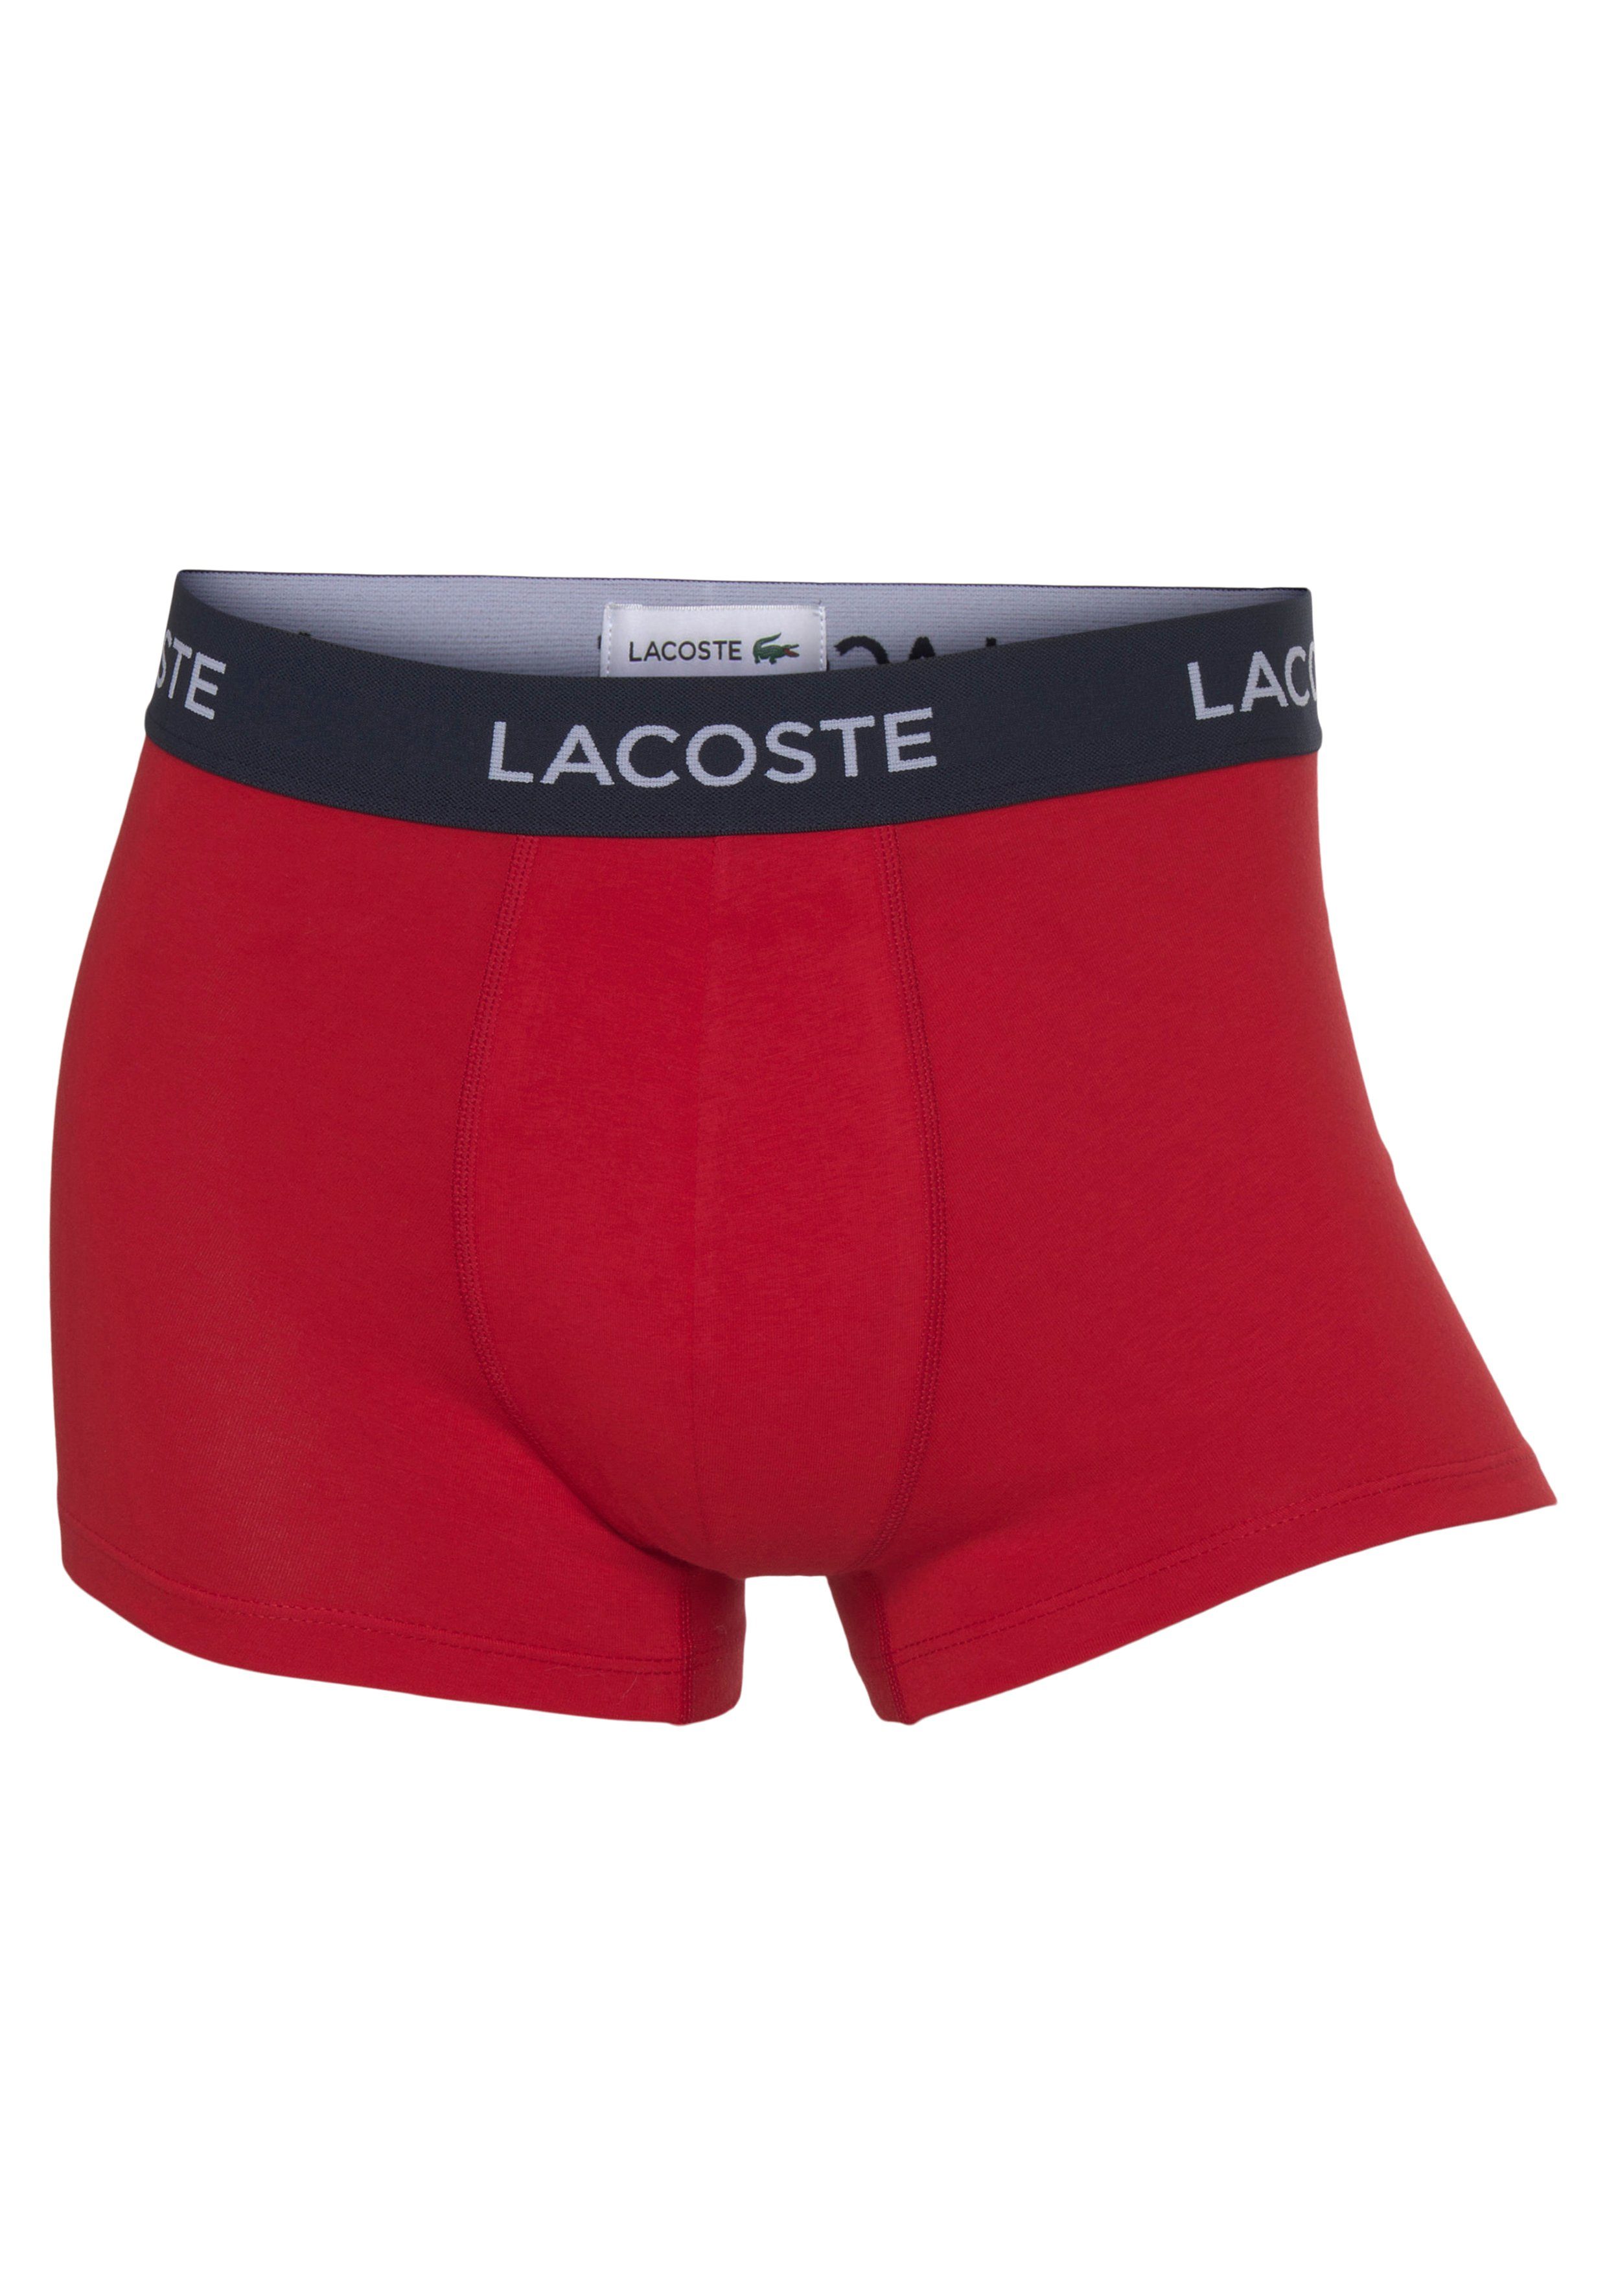 Lacoste-Schriftzug Boxershorts weiß/schwarz Lacoste mit 3-St., am 3er-Pack) rot/ (Packung, Bund